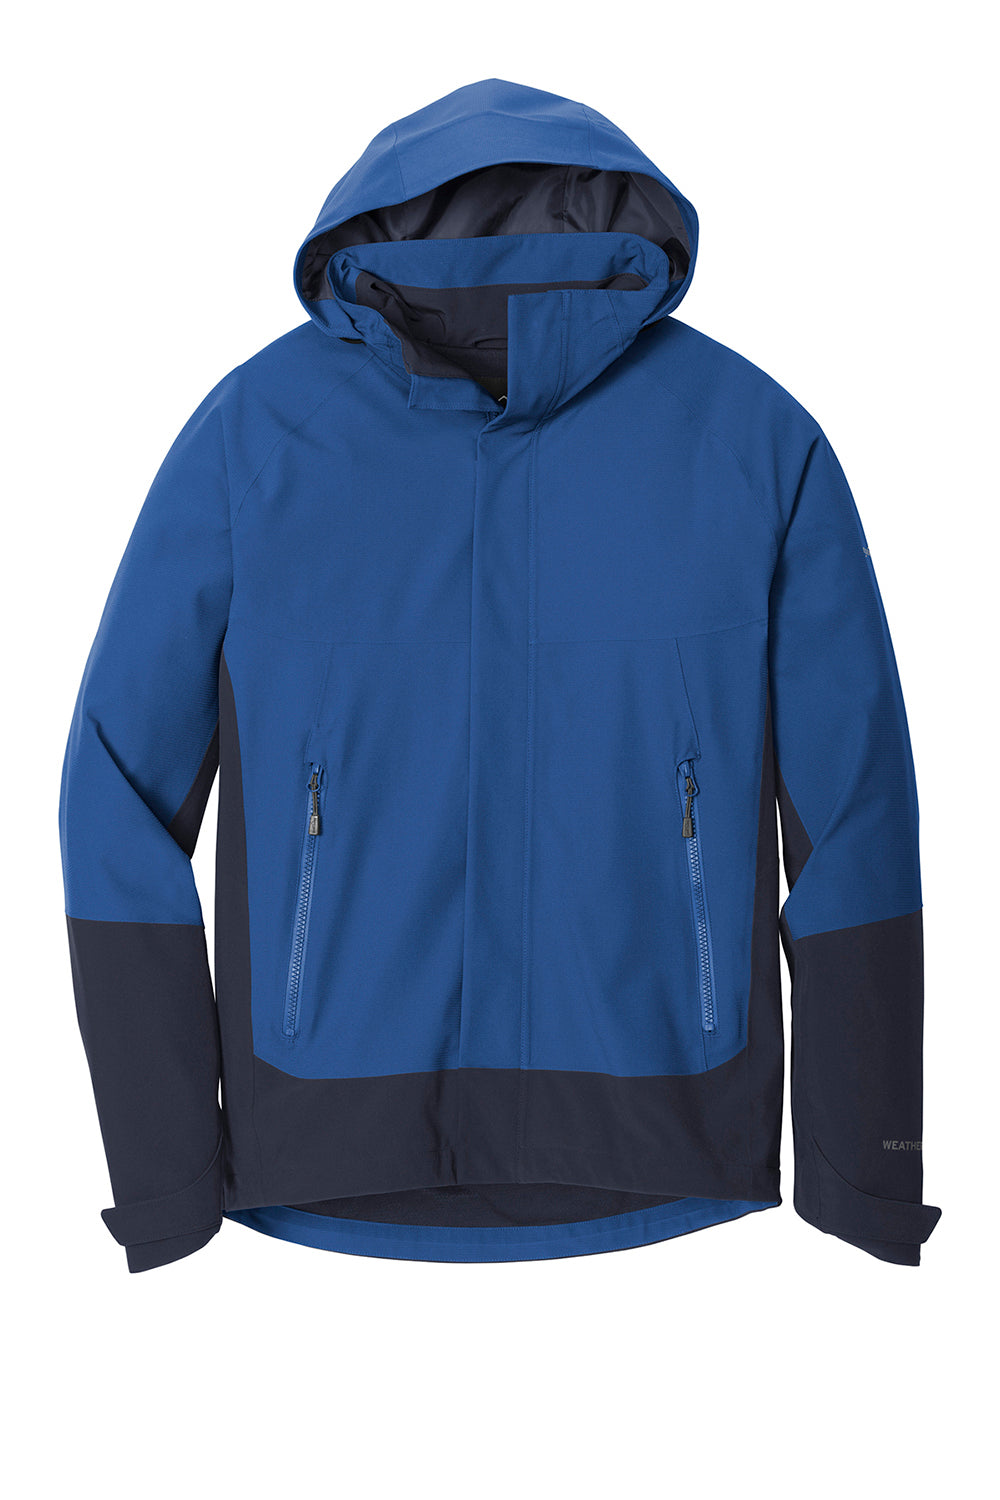 Eddie Bauer EB558 Mens WeatherEdge Waterproof Full Zip Hooded Jacket Cobalt Blue Flat Front